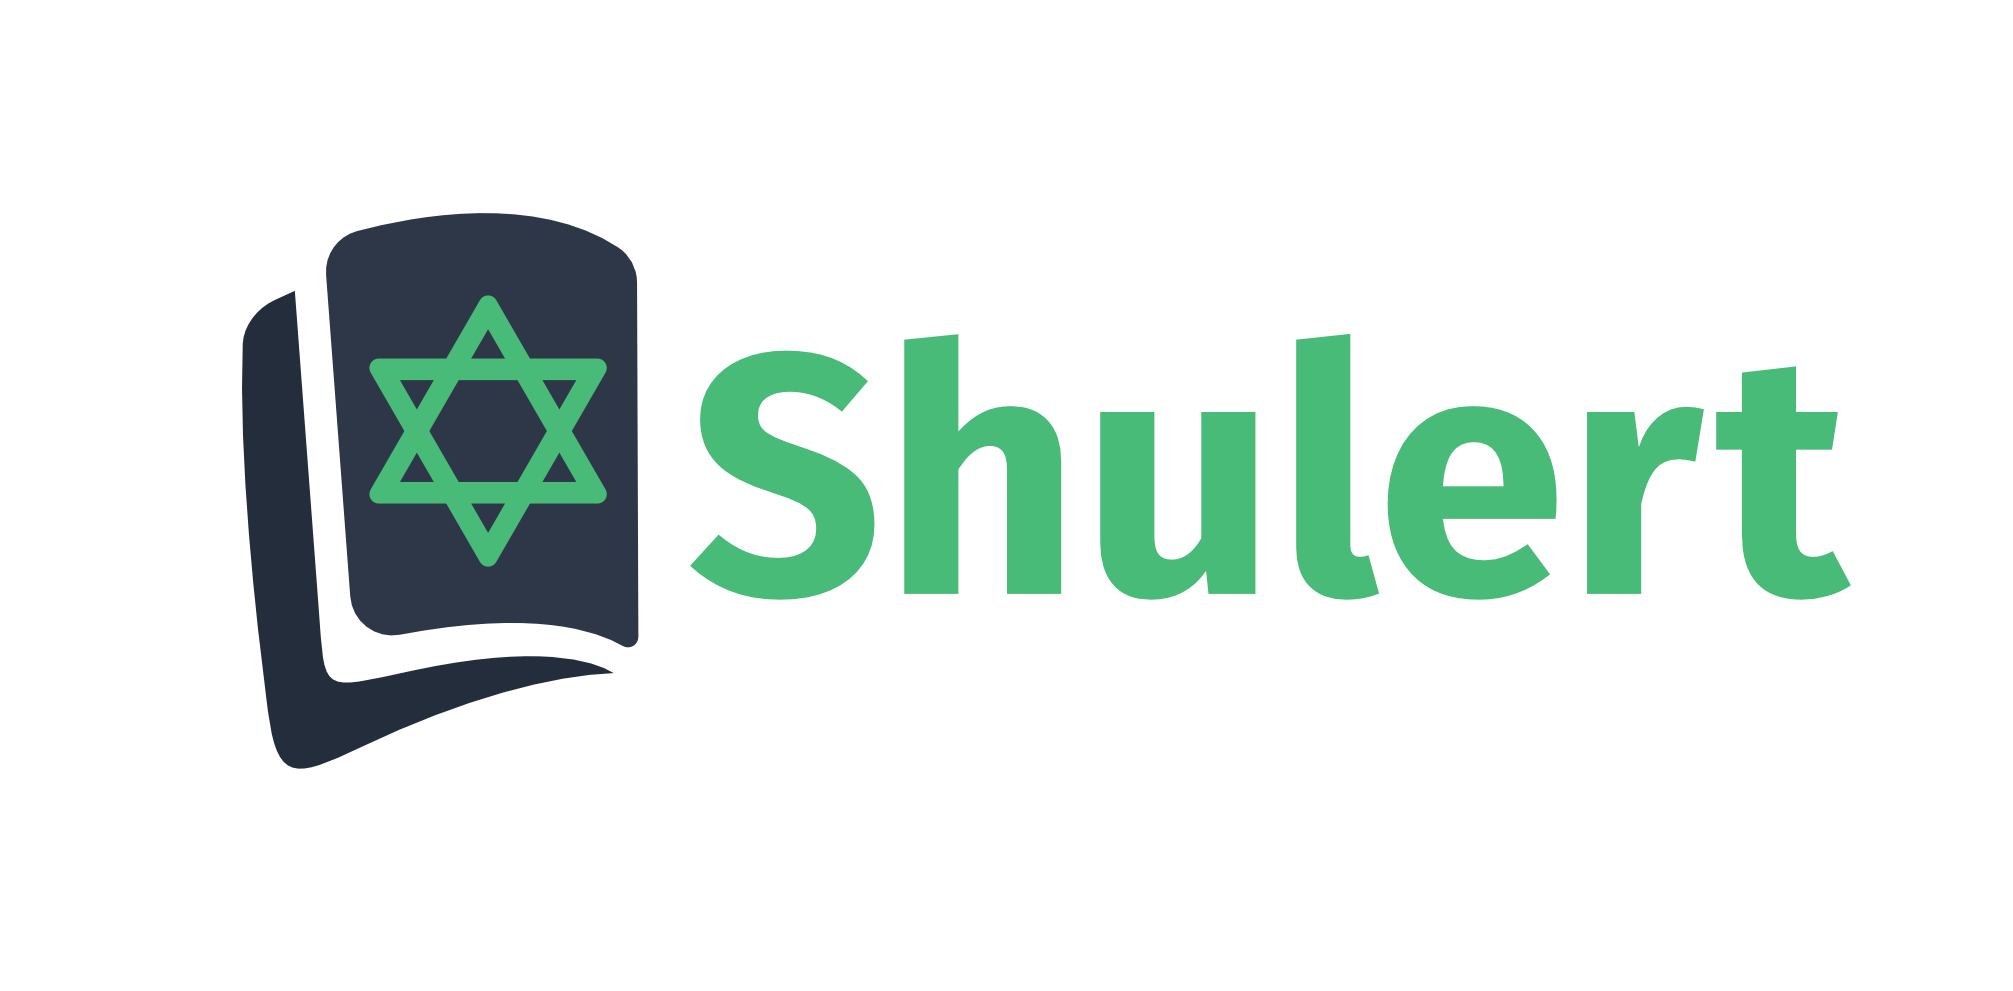 Shulert logo